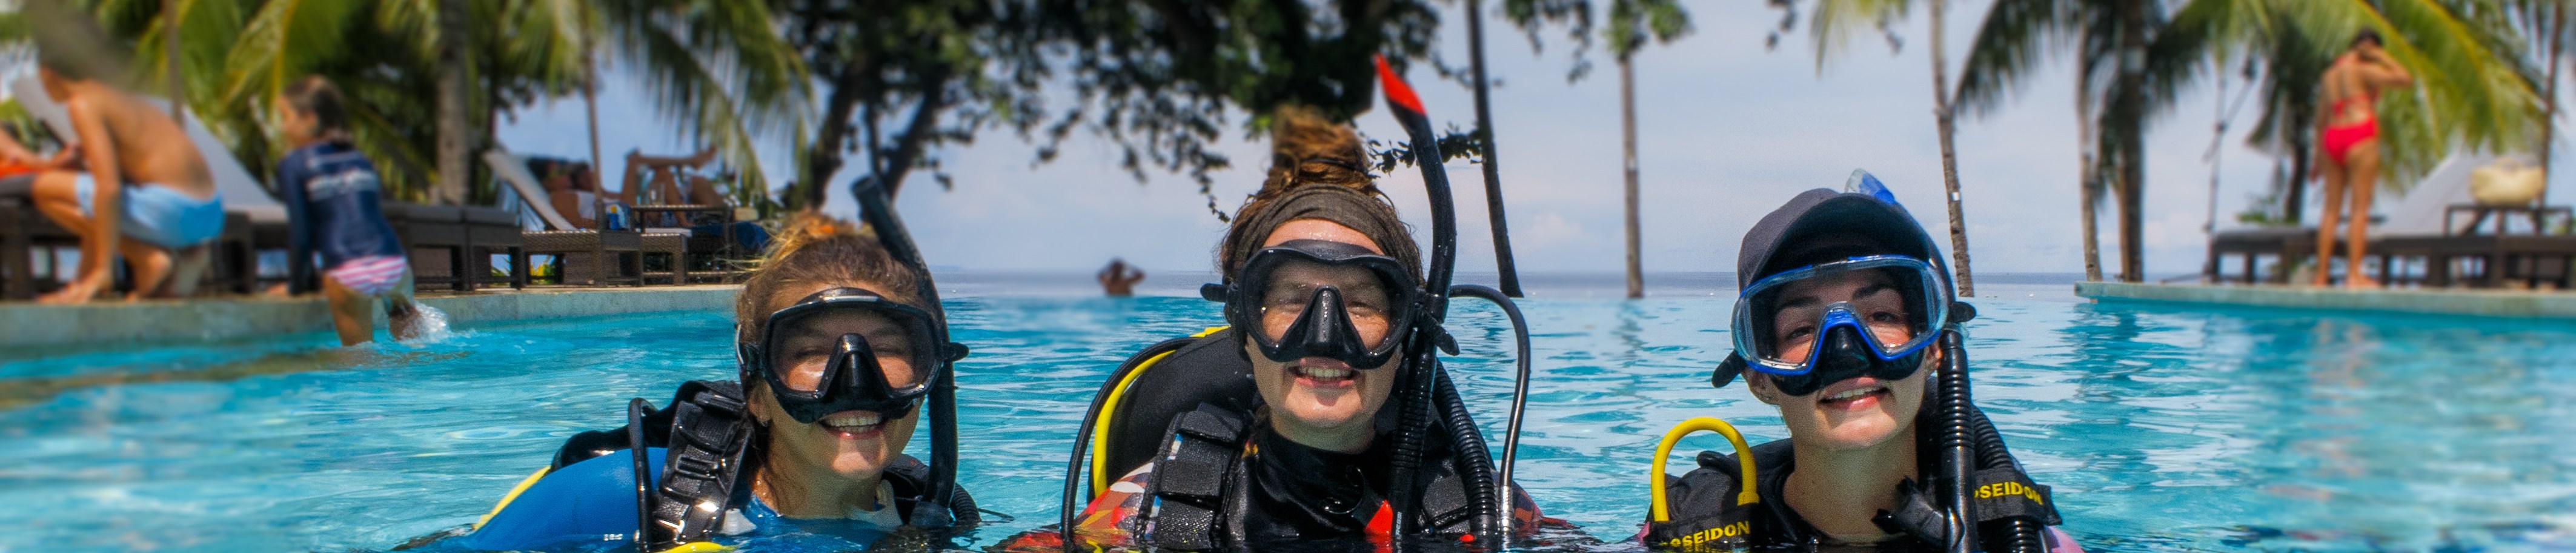 內格羅斯島 PADI 五星潛水中心初學者潛水課程